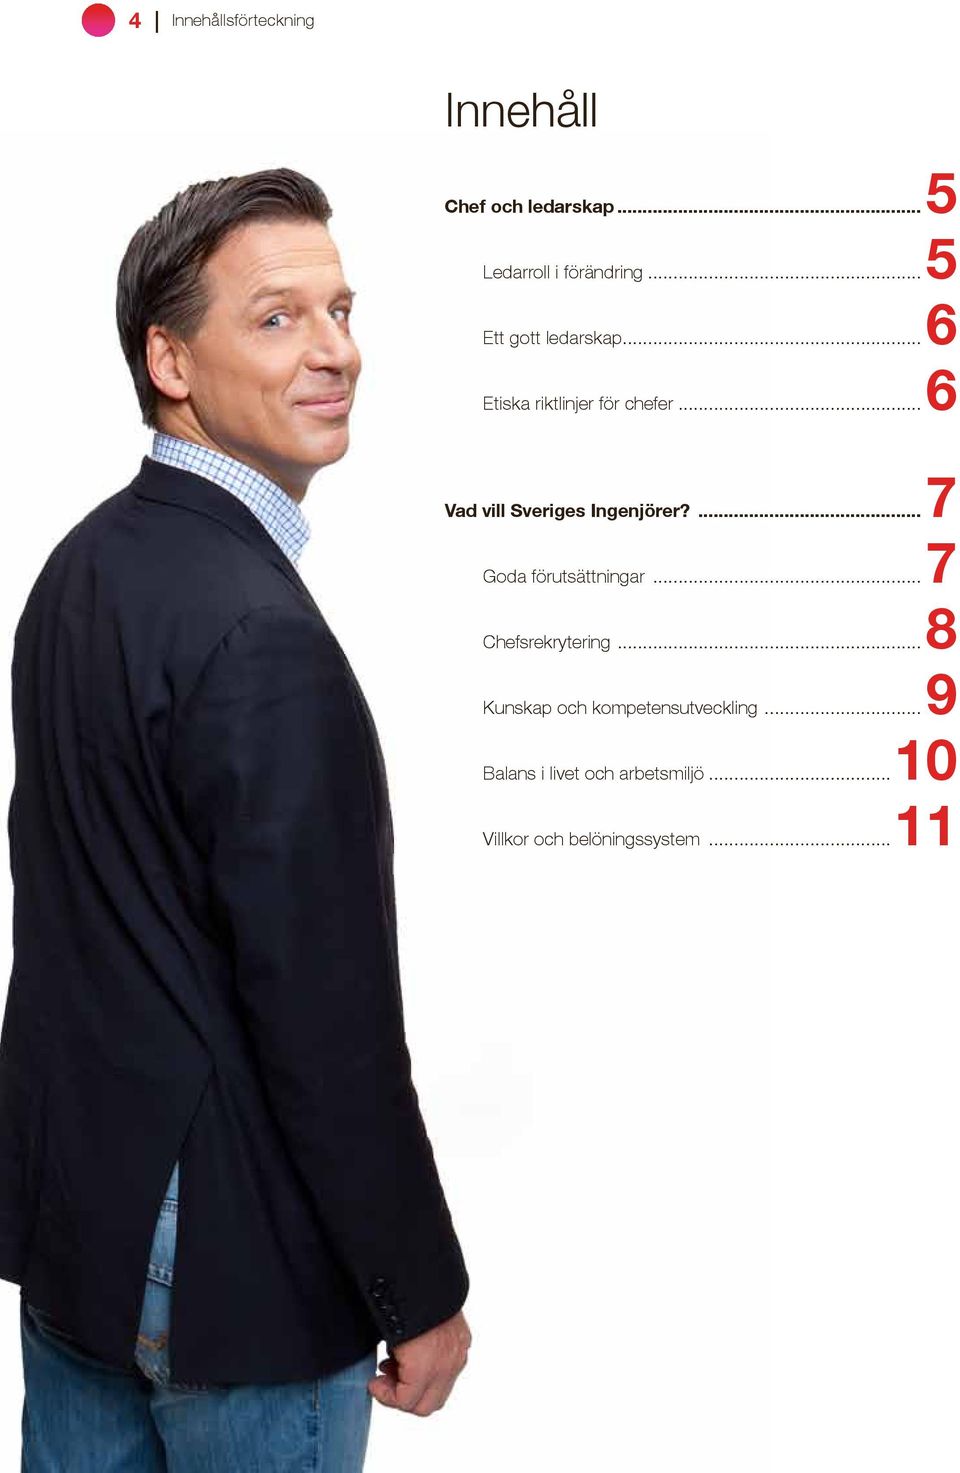 ..6 Vad vill Sveriges Ingenjörer?...7 Goda förutsättningar...7 Chefsrekrytering.